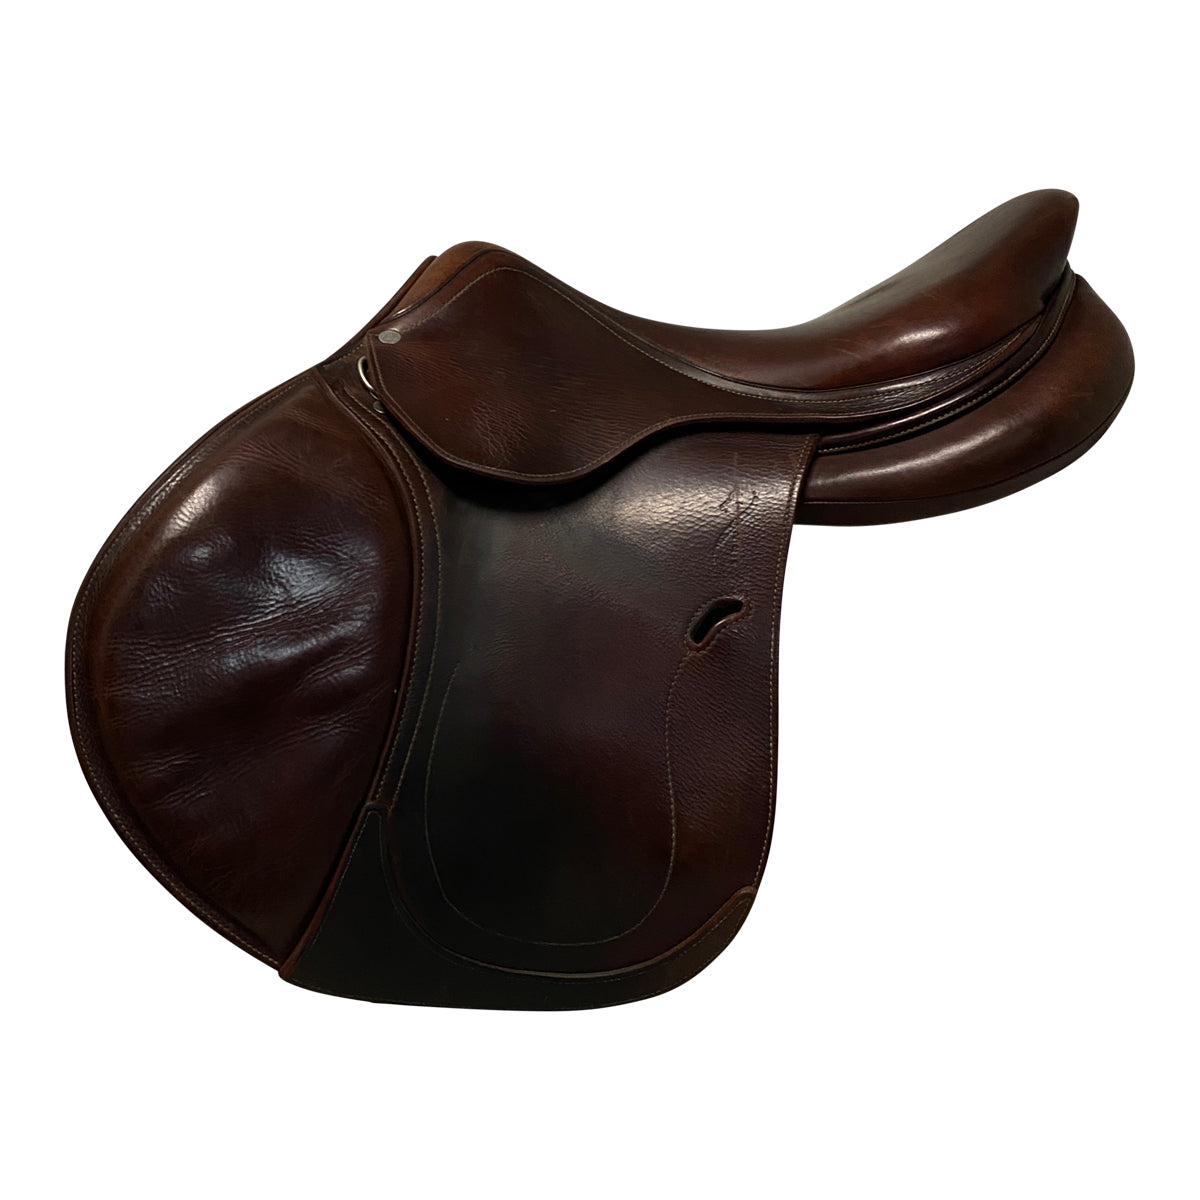 Antarés 2014 'Contact' Saddle in Brown